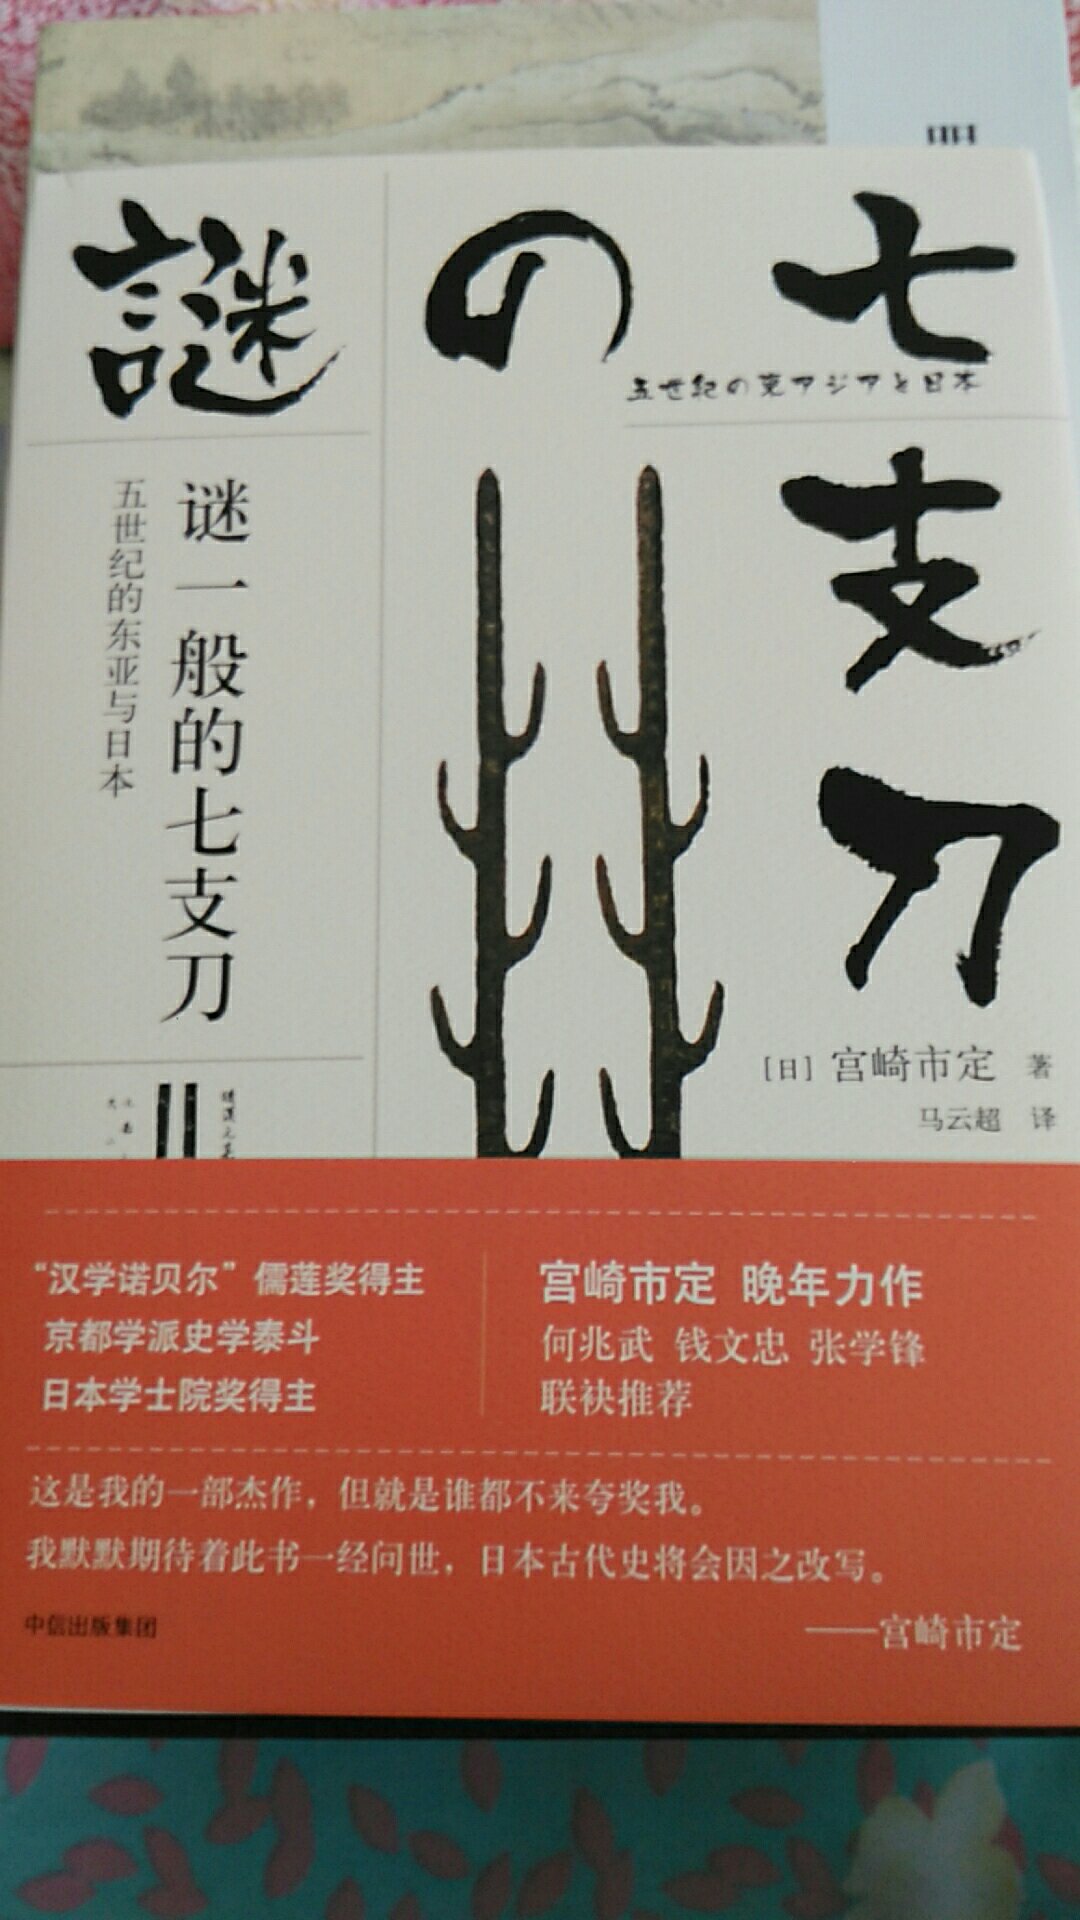 宫崎的代表作，学术专著，不错。对日本史感兴趣的，可以买来瞧瞧，值得一读。快递给力，赞?！